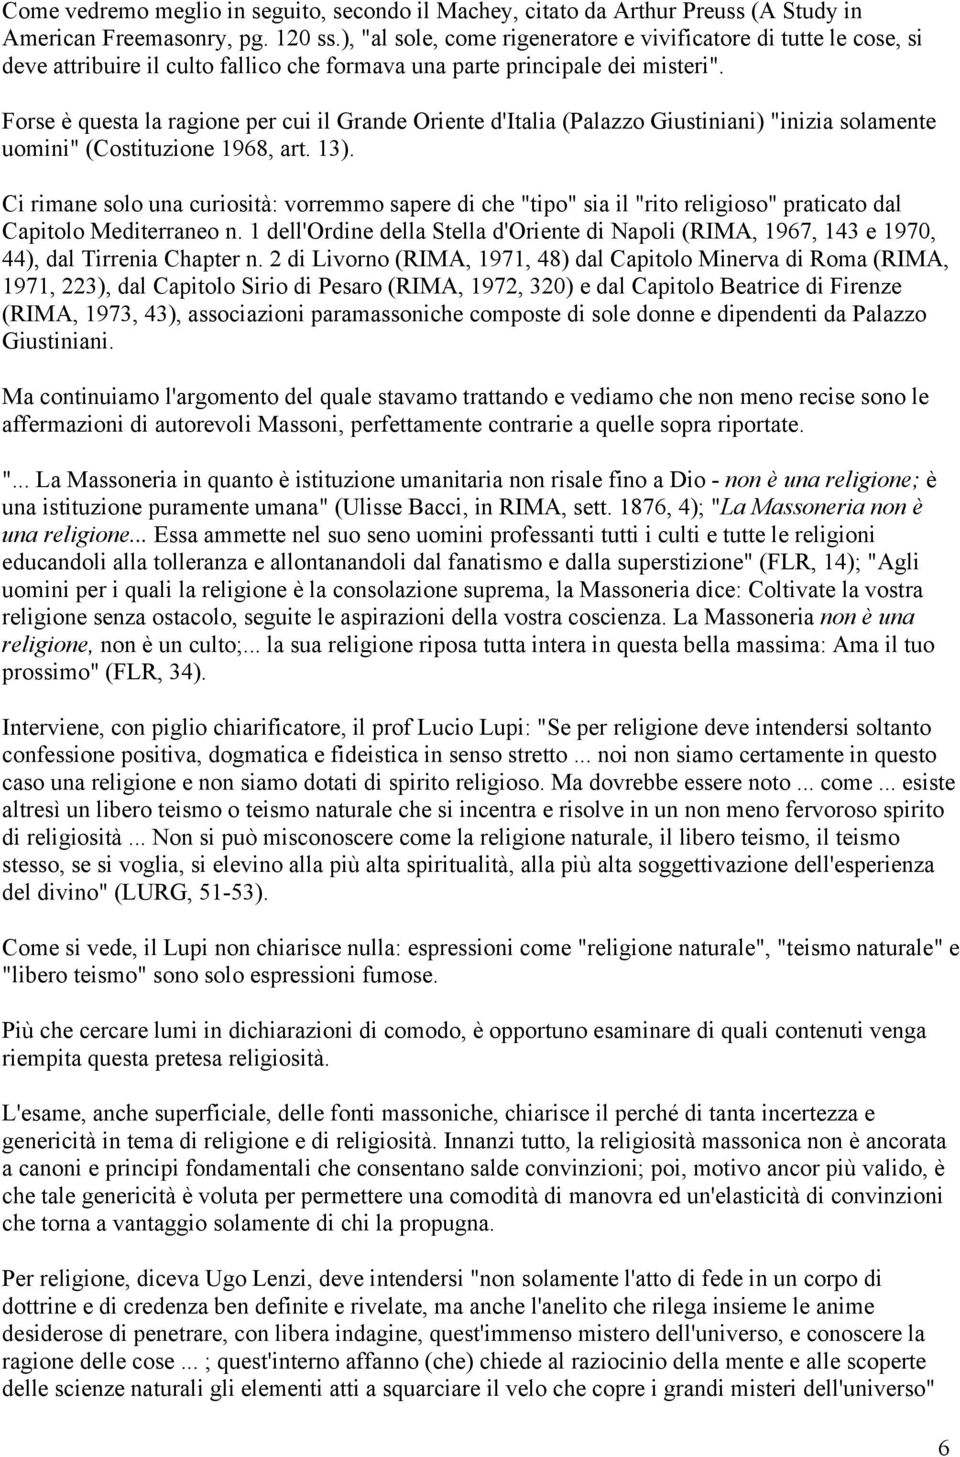 Frasi Di Natale Massoniche.F Giantulli S J L Essenza Della Massoneria Italiana Il Naturalismo Pdf Free Download